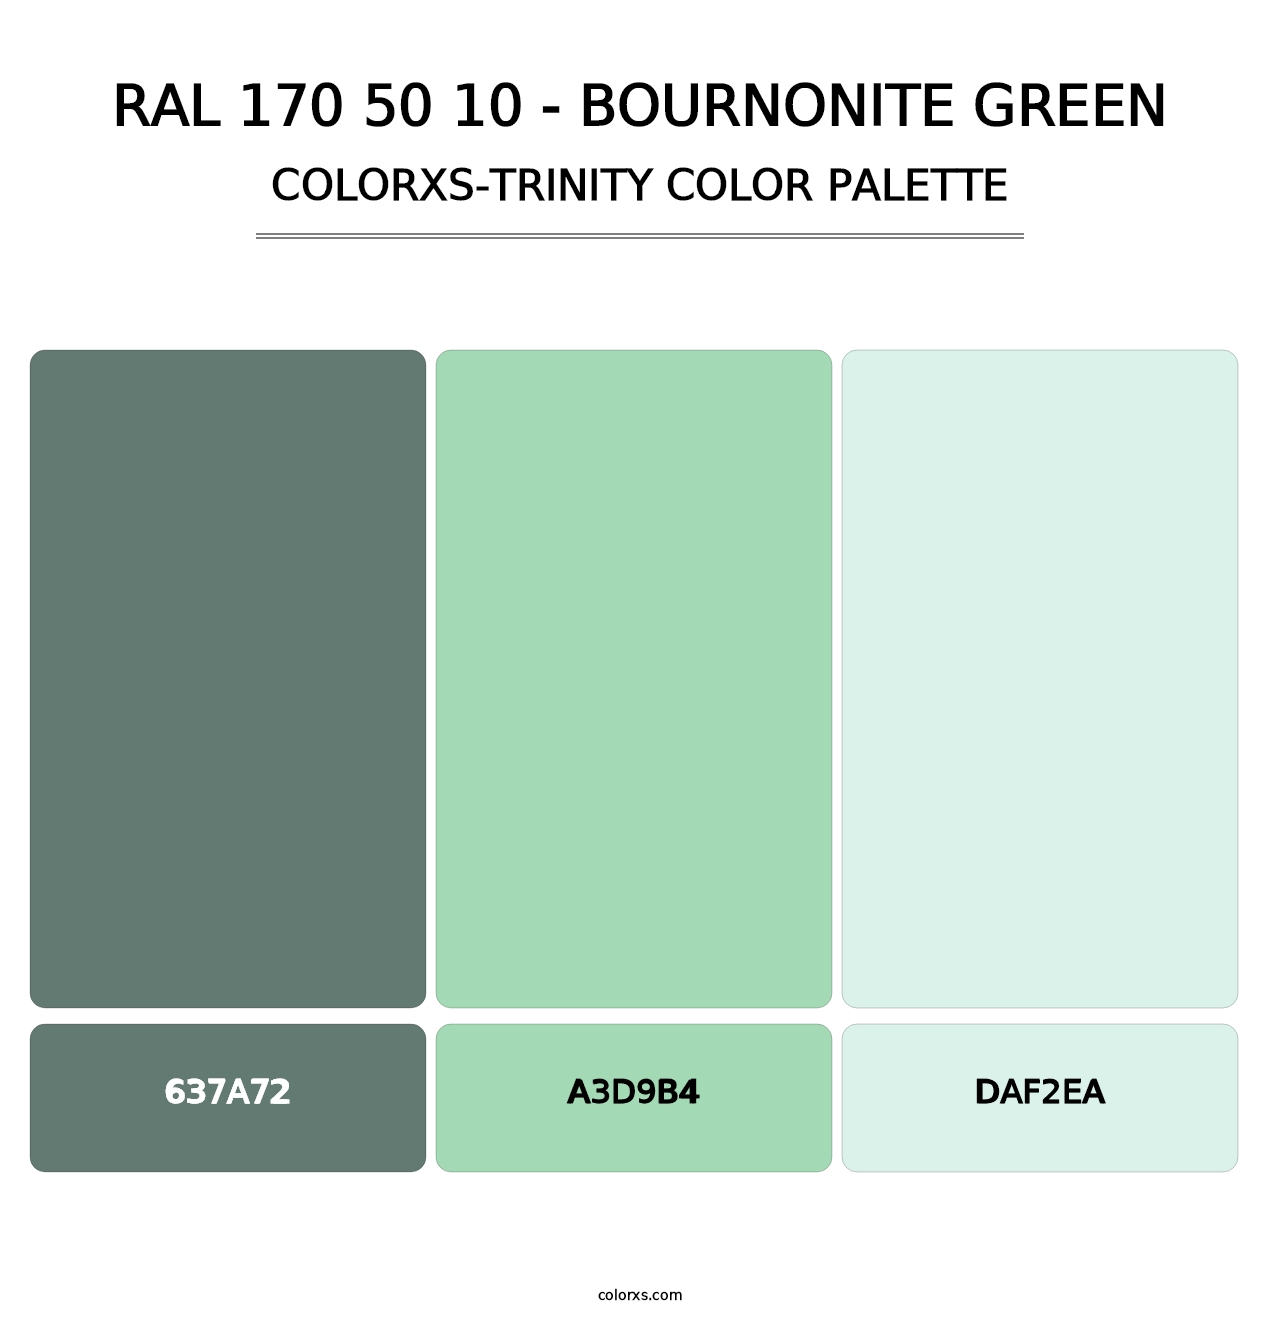 RAL 170 50 10 - Bournonite Green - Colorxs Trinity Palette